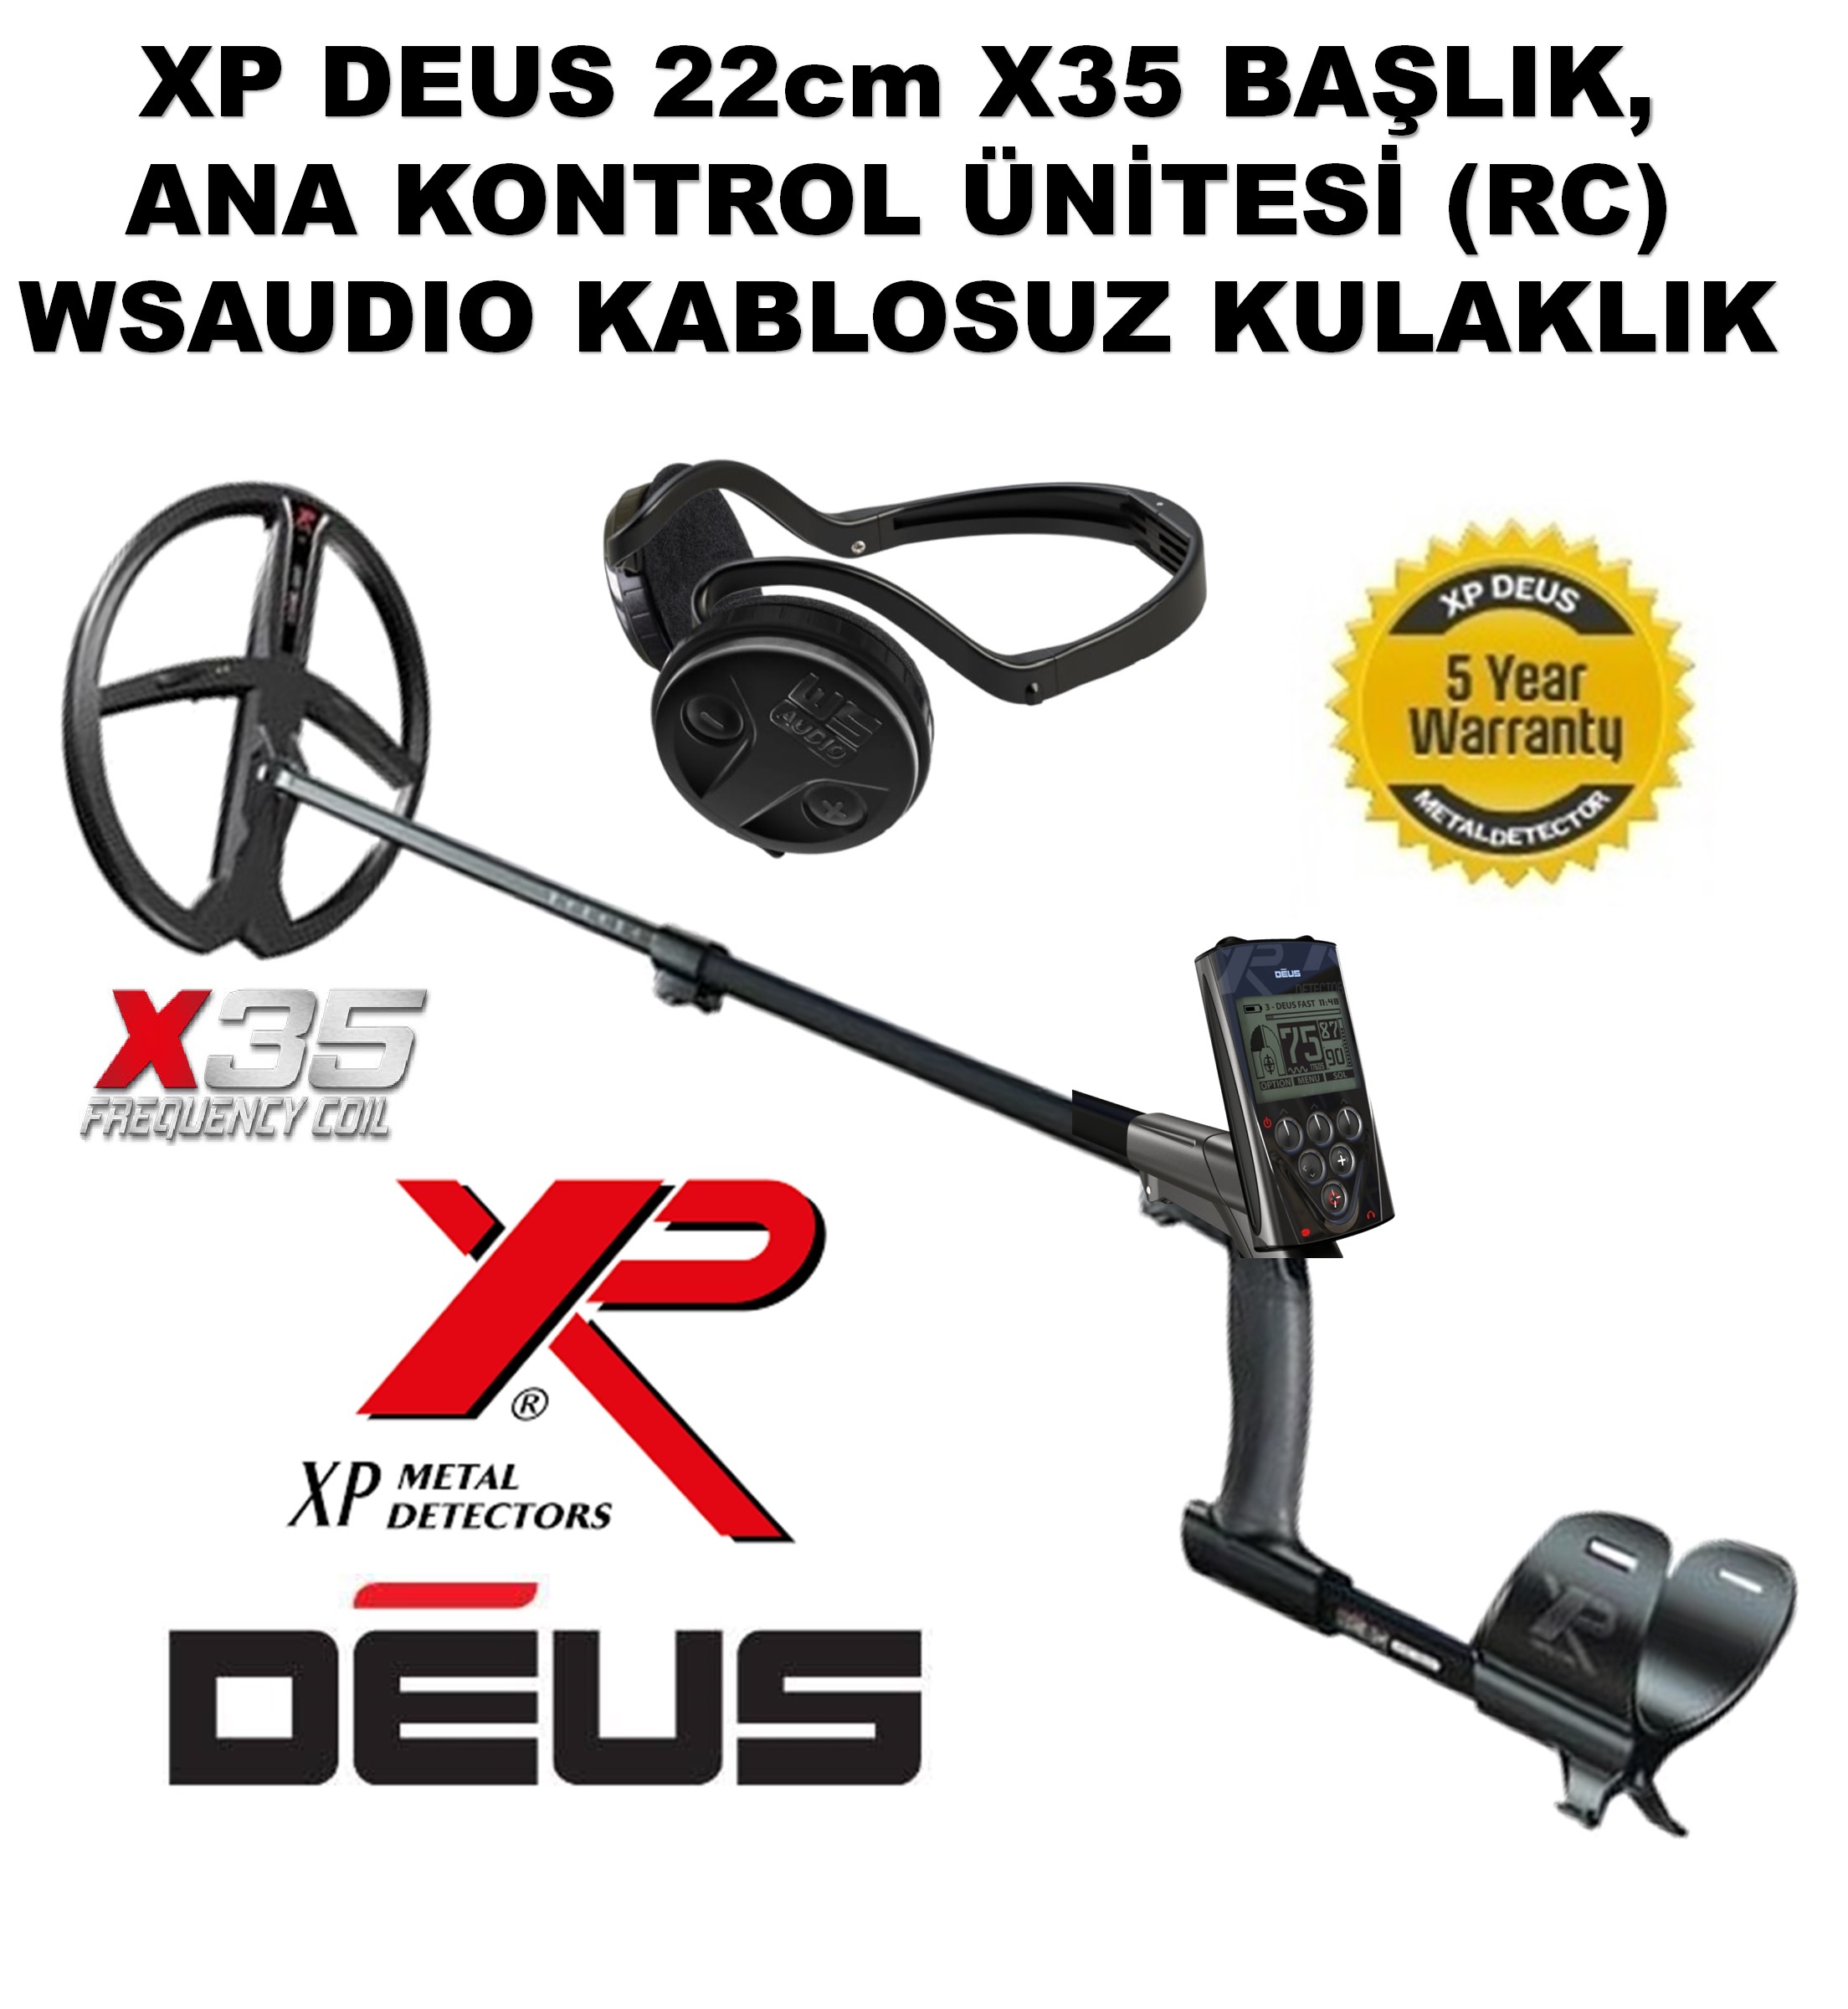 XP DEUS - 22,5cm X35 Başlık, Ana Kontrol Ünitesi (RC), WSAUDIO Kulaklık, FULL PAKET